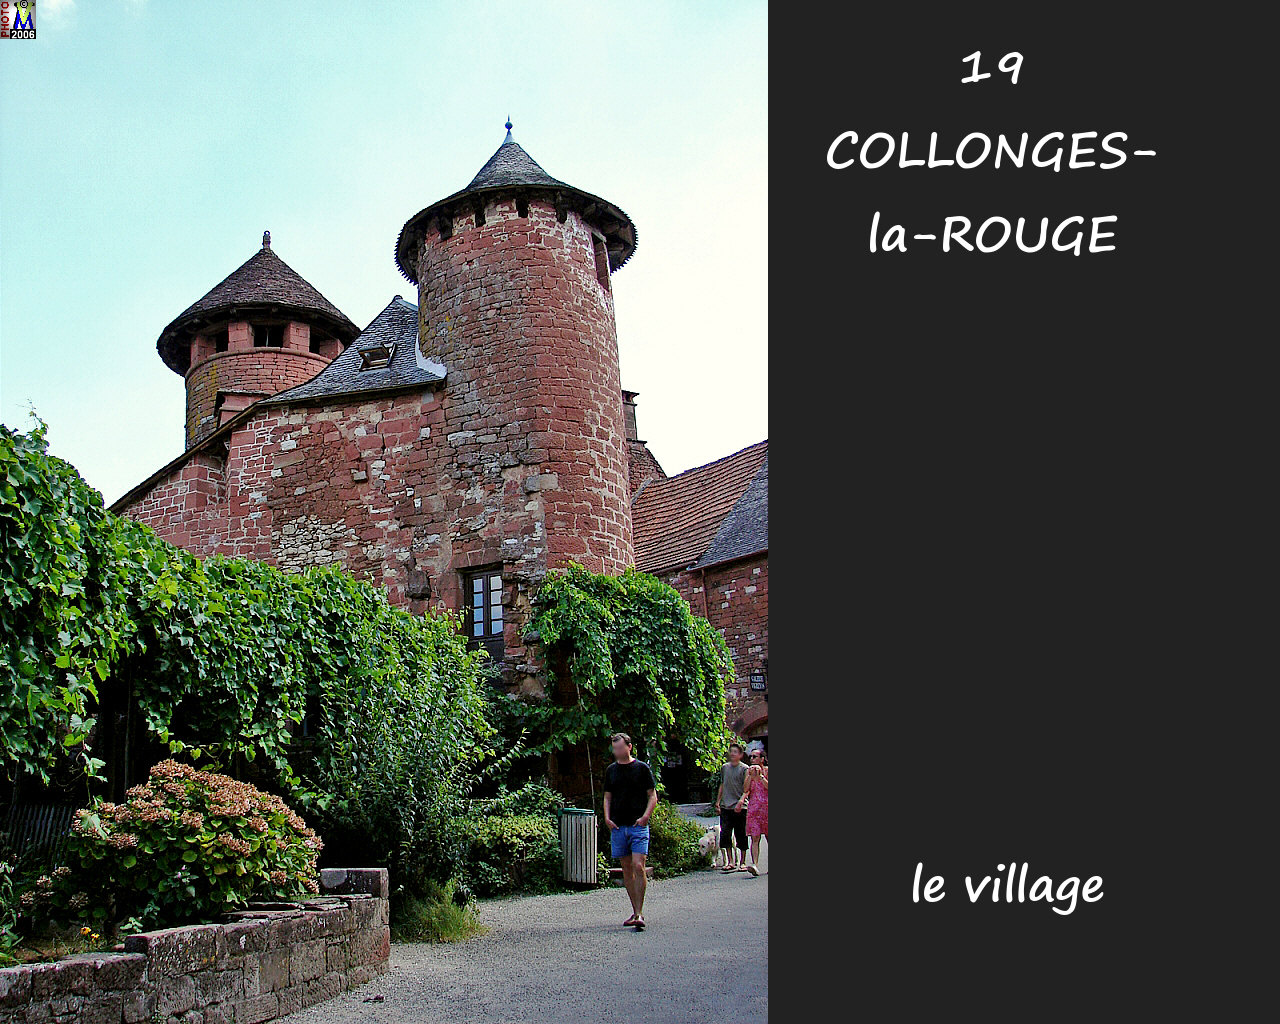 19COLLONGES-ROUGE_village_118.jpg